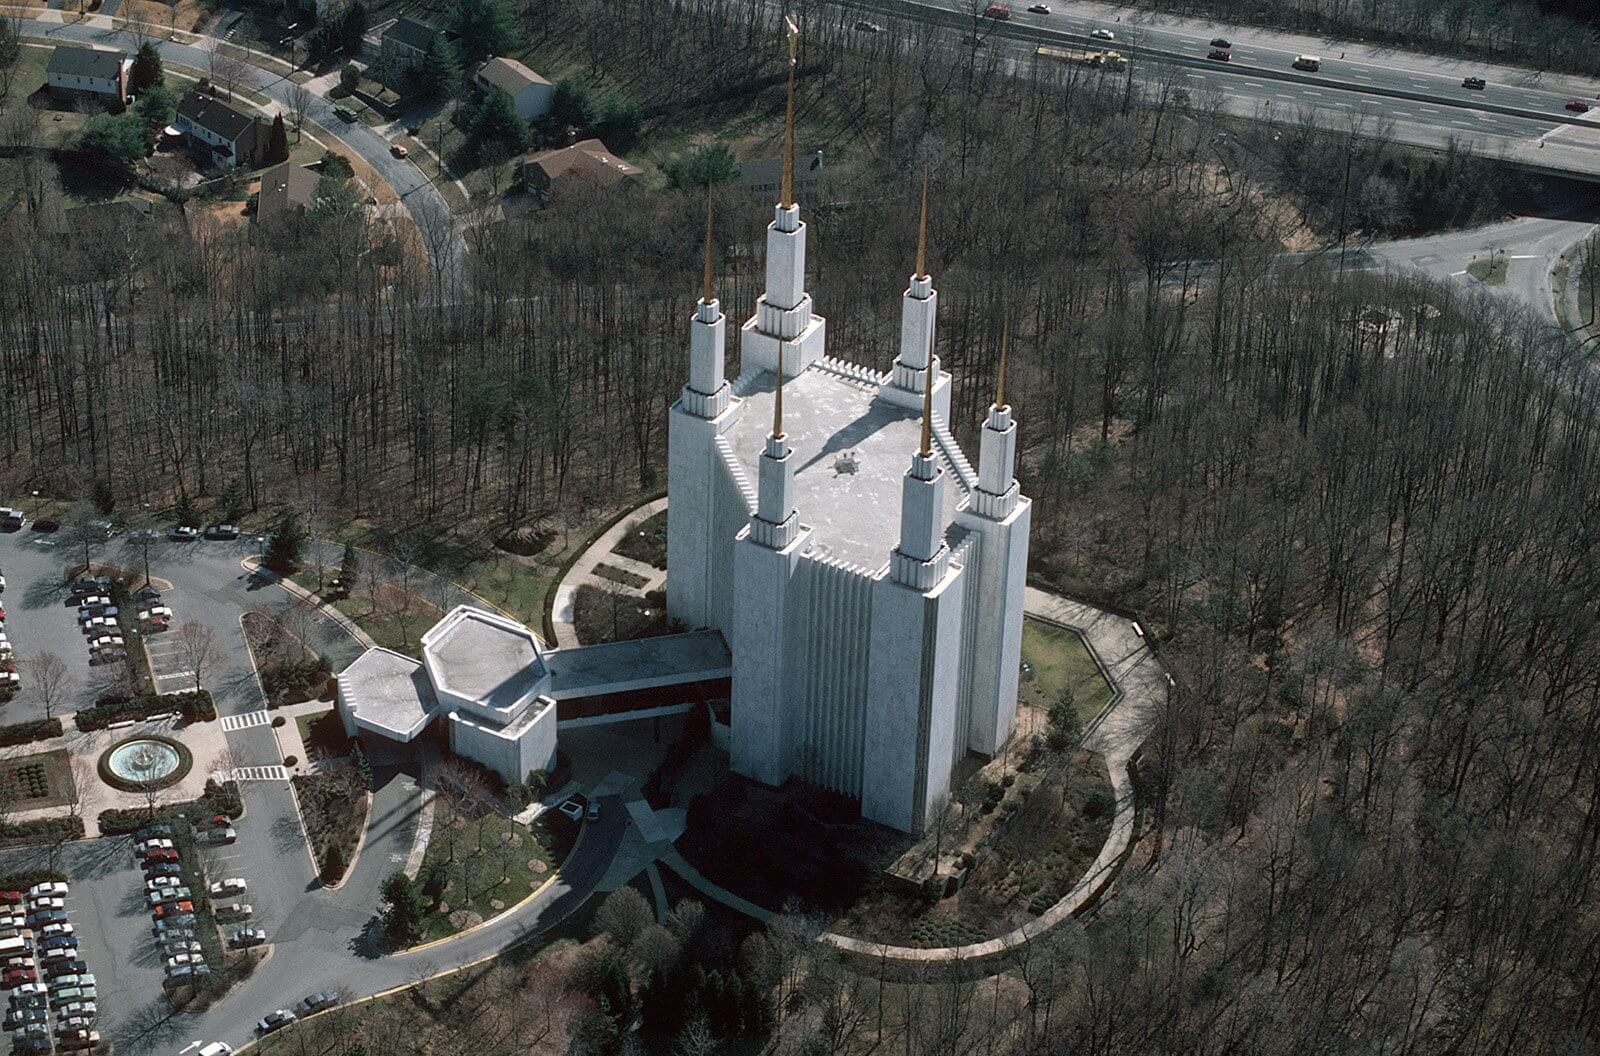 Design of the mormon temple